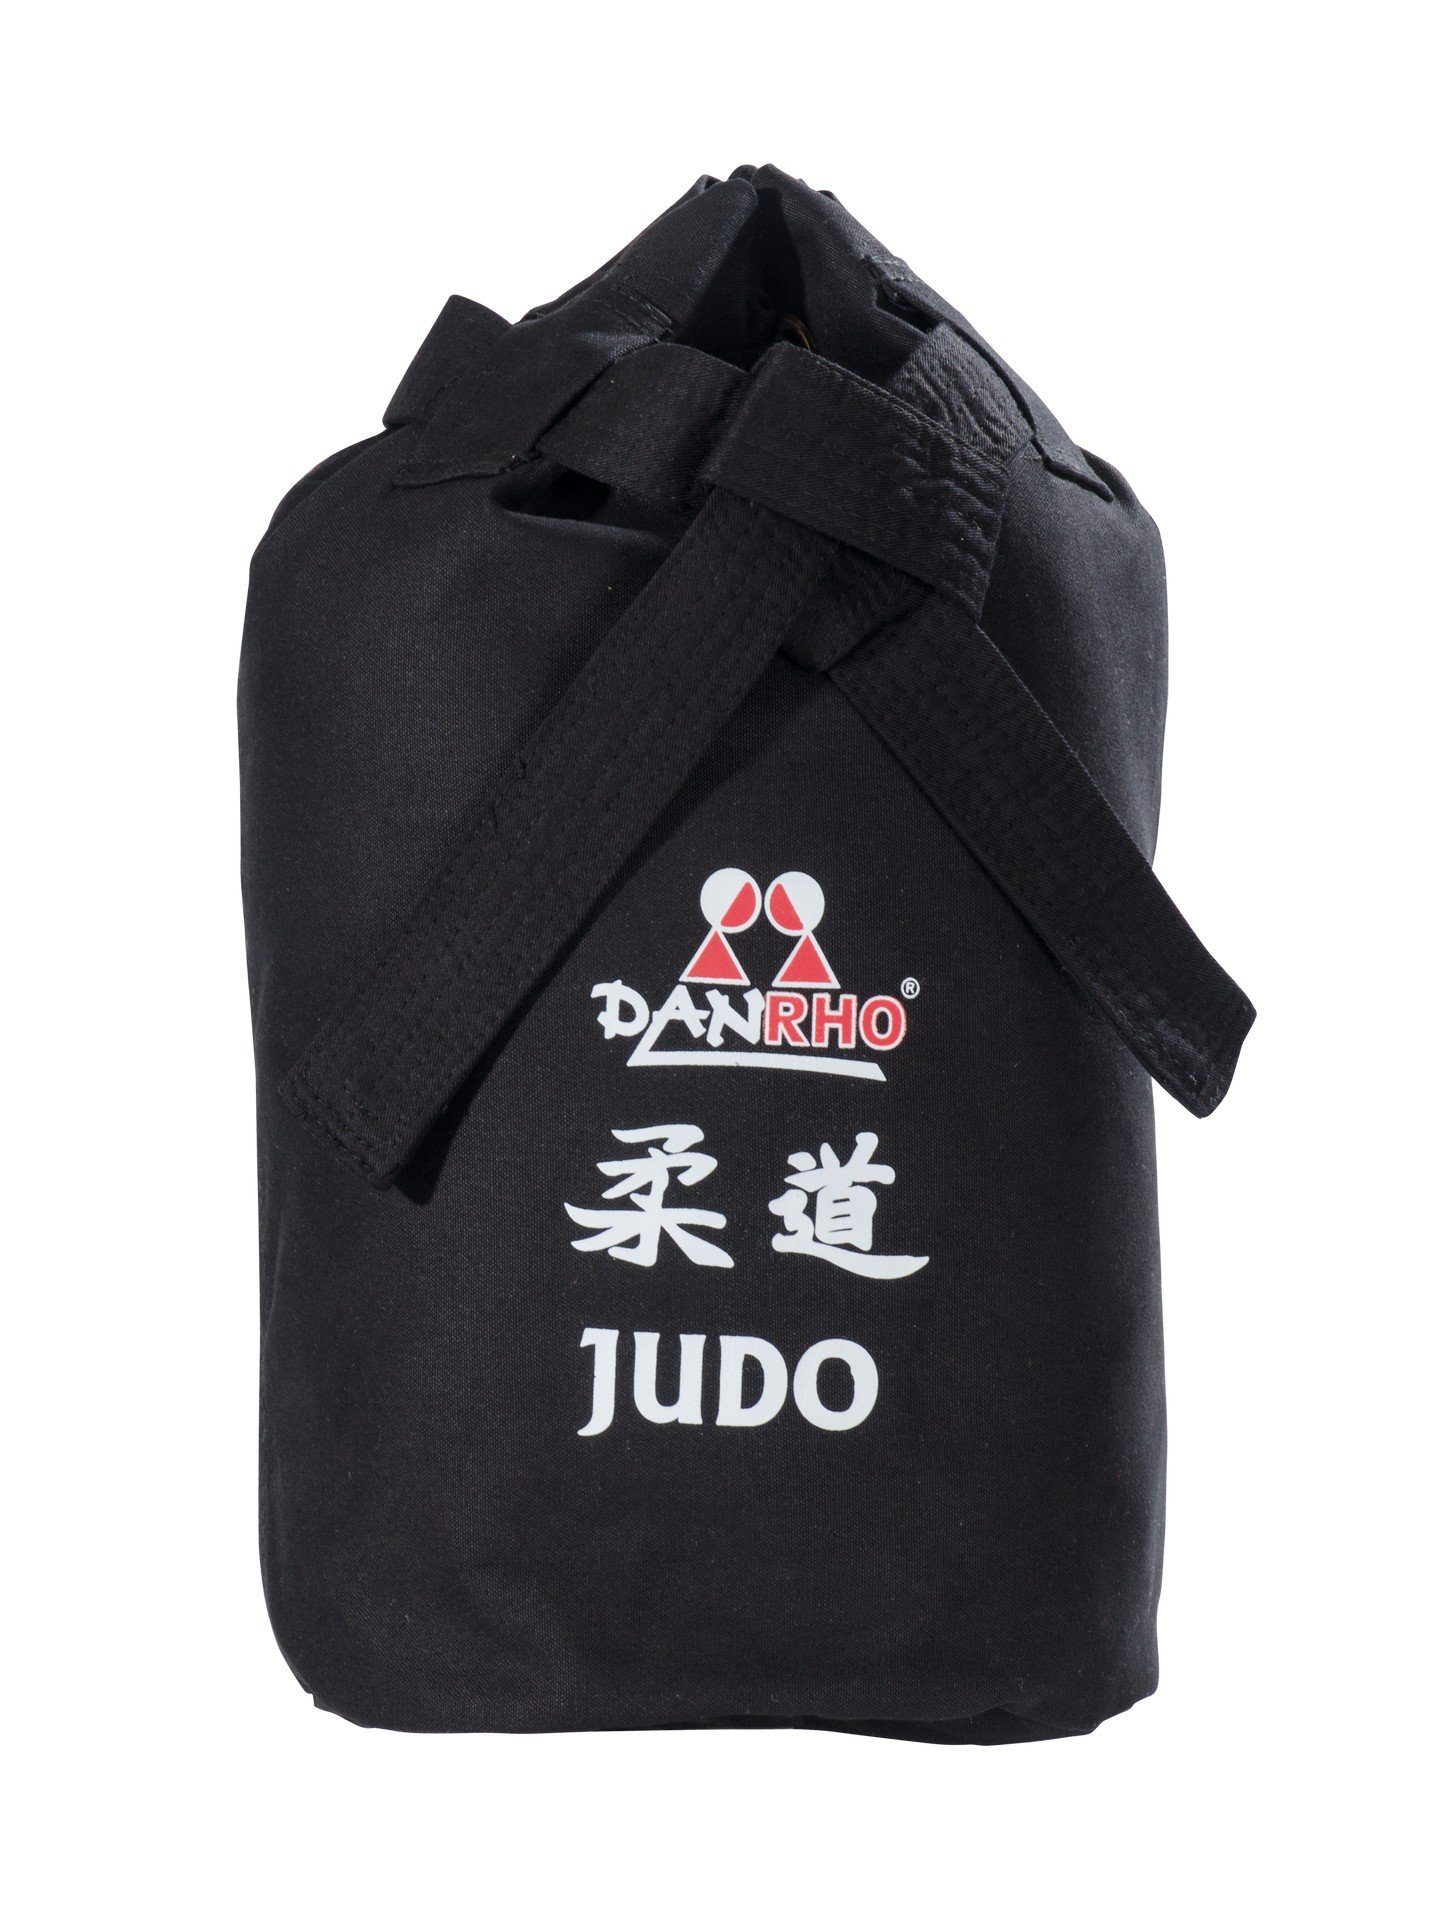 Danrho Sporttasche Judo Seesack Beutel schwarz Schnellverschluß), oder (Baumwolle, Turnbeutel Budogürtel Rucksack Optik Kinder weiss, Kordelzug